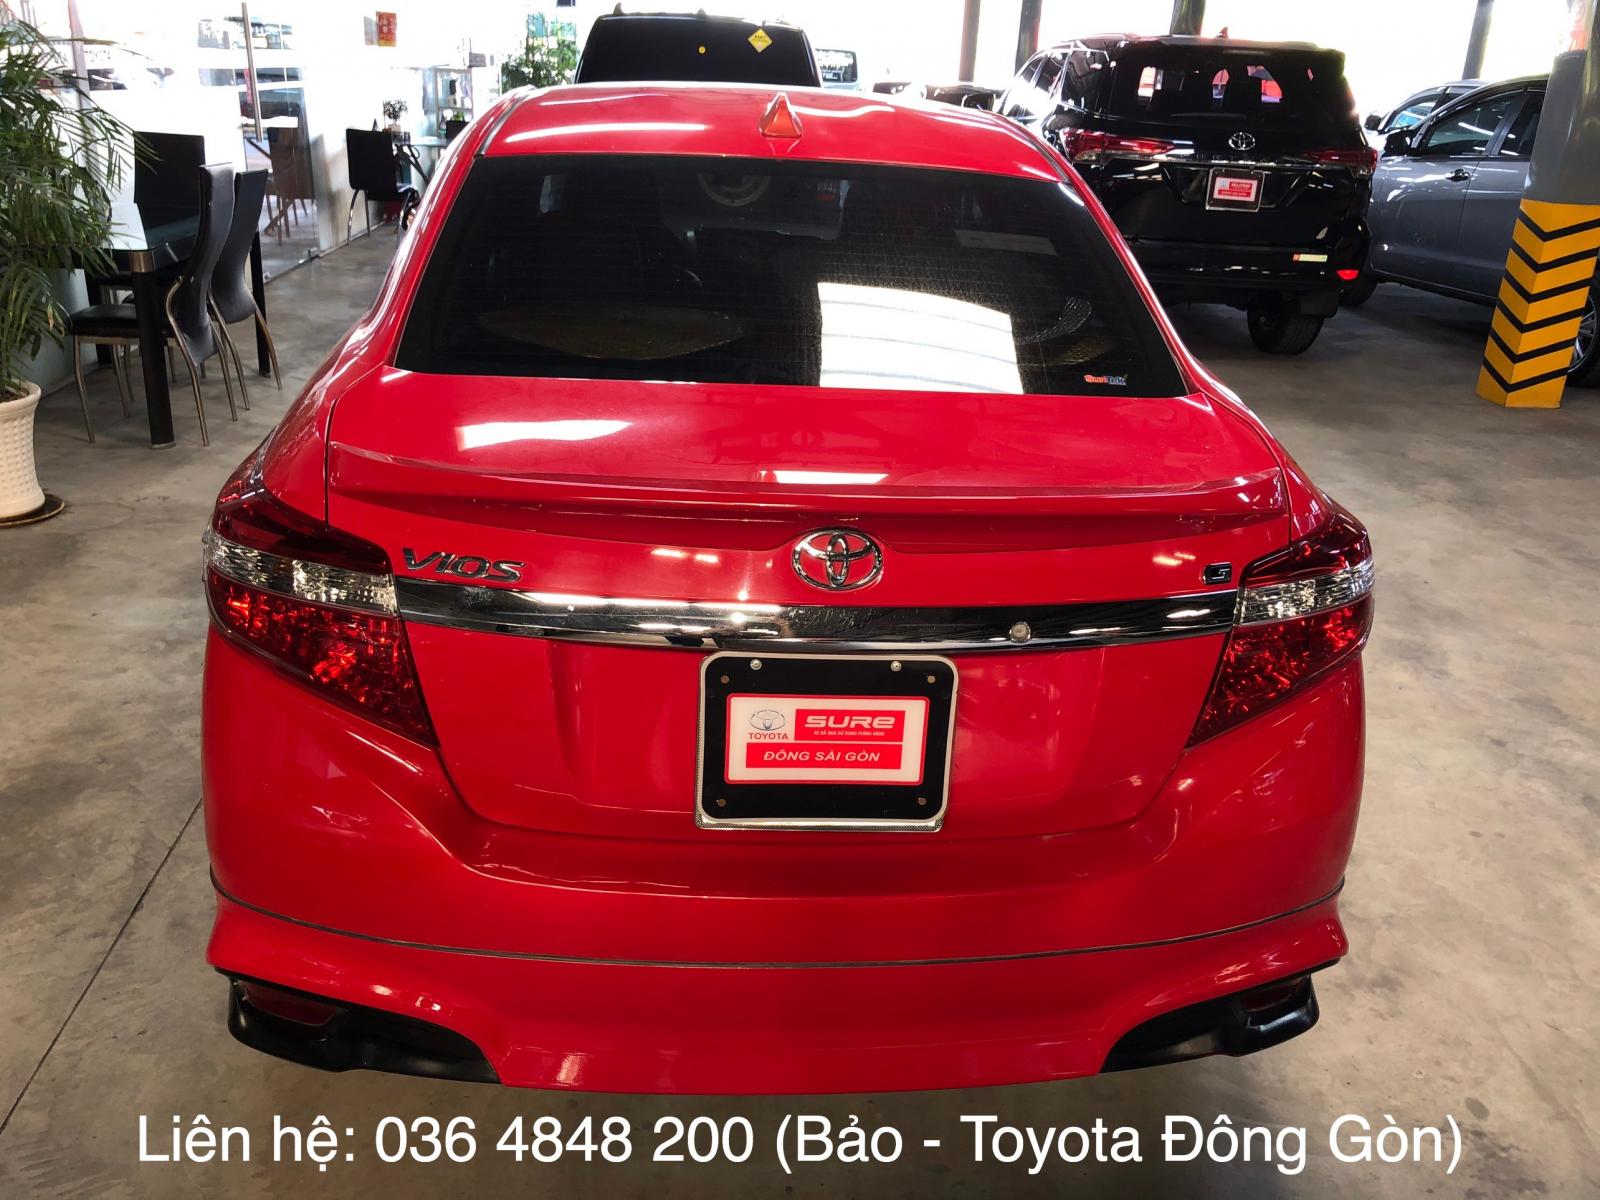 Toyota Vios 2015 - Vios số tự động 2015 Toyota Đông Sài Gòn khuyến mãi giảm giá cực sốc